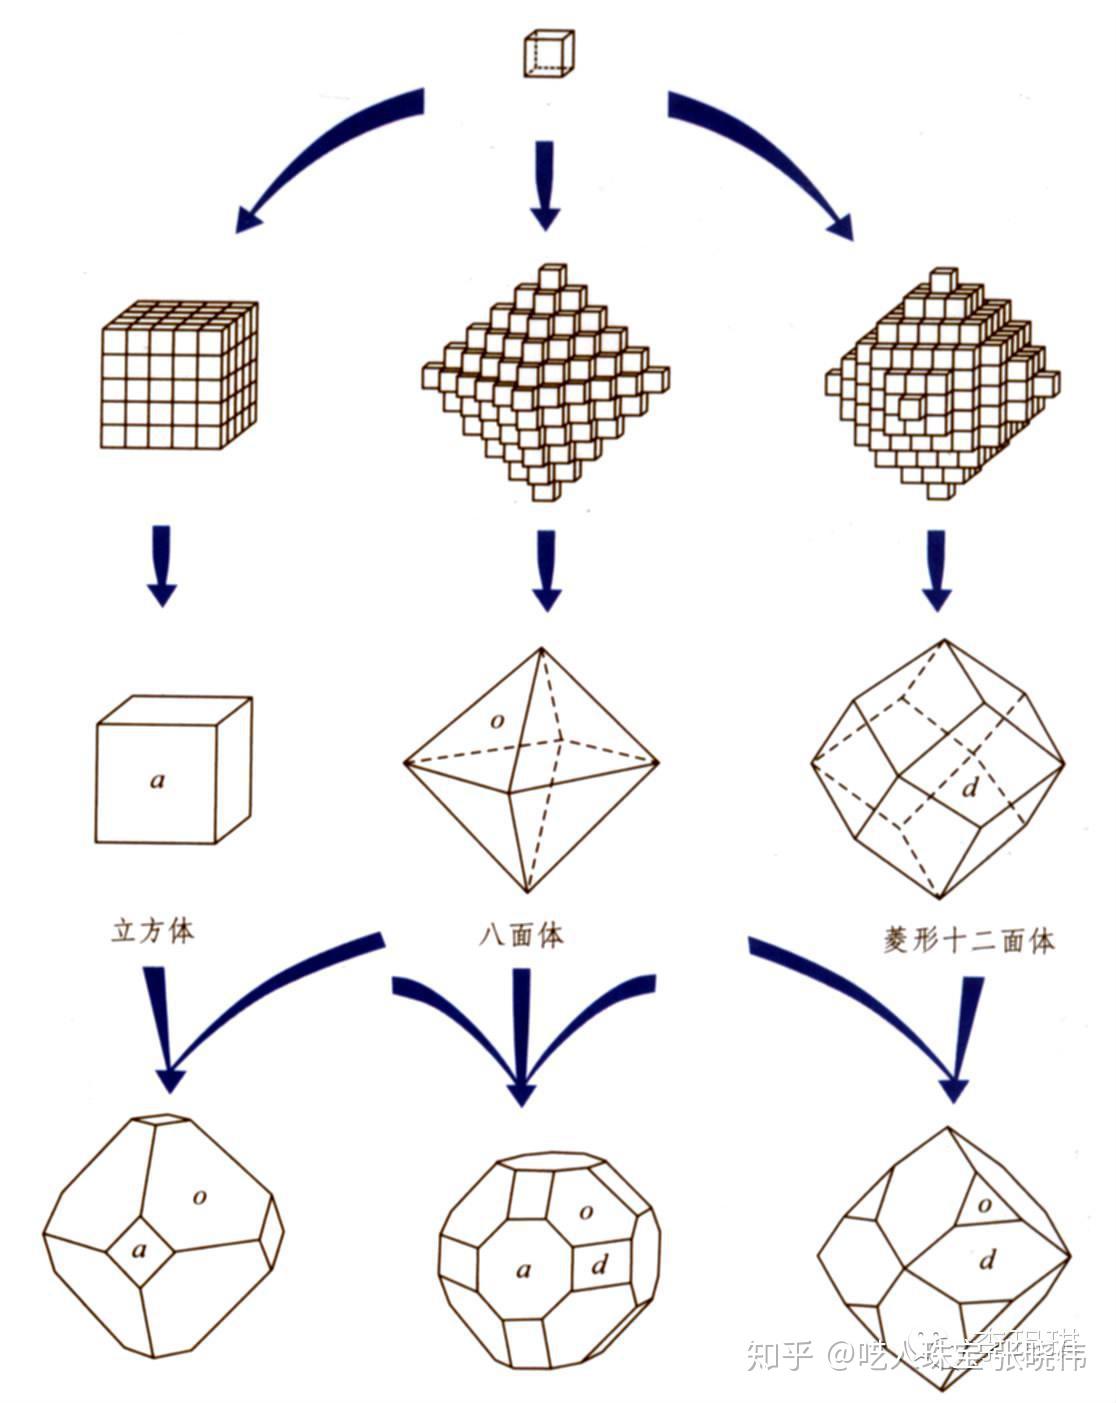 次之的是(110)和(100)方向,分别可以形成菱形十二面体和立方体,以及这